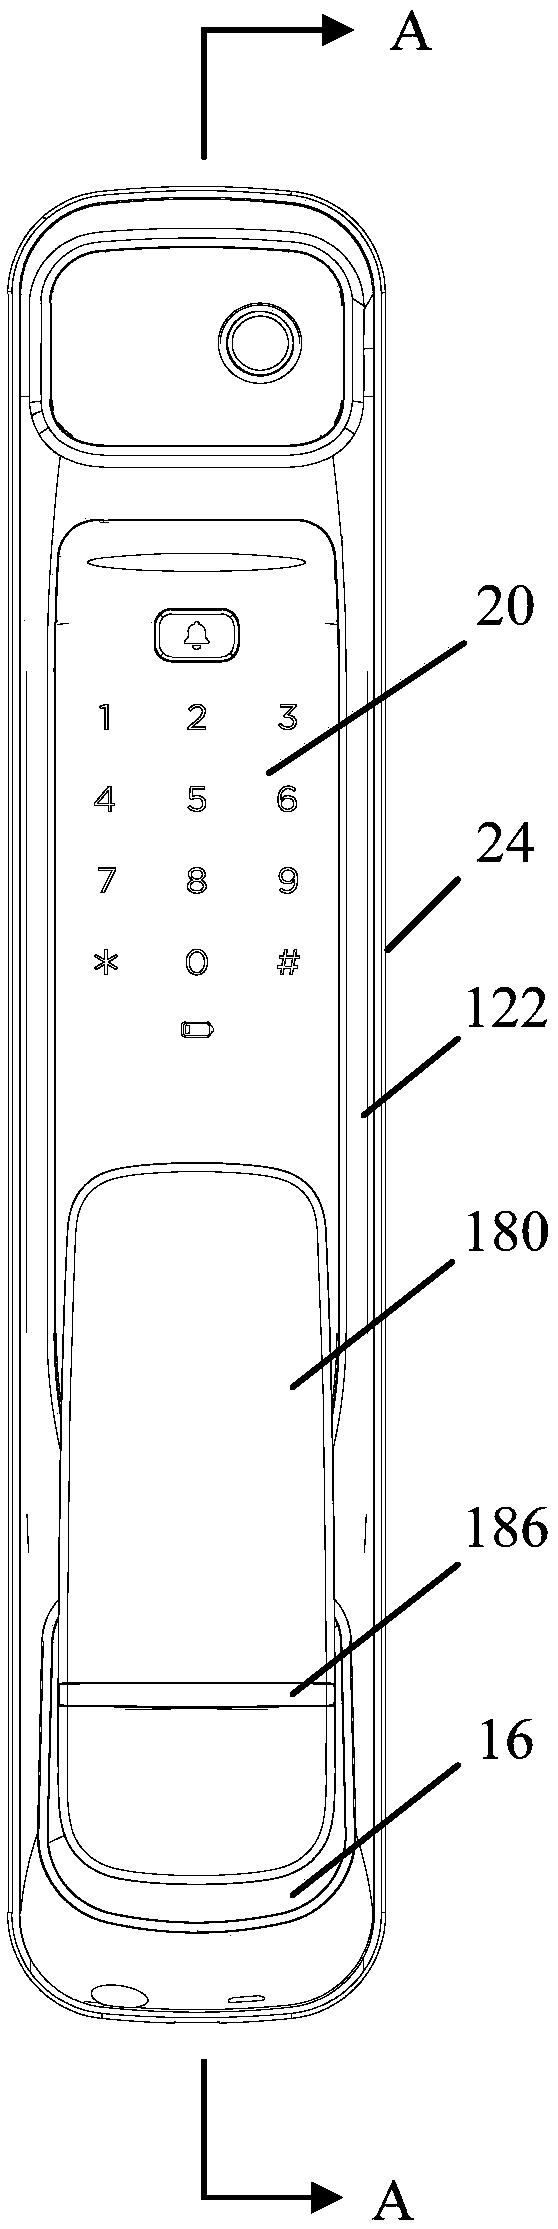 Door lock structure